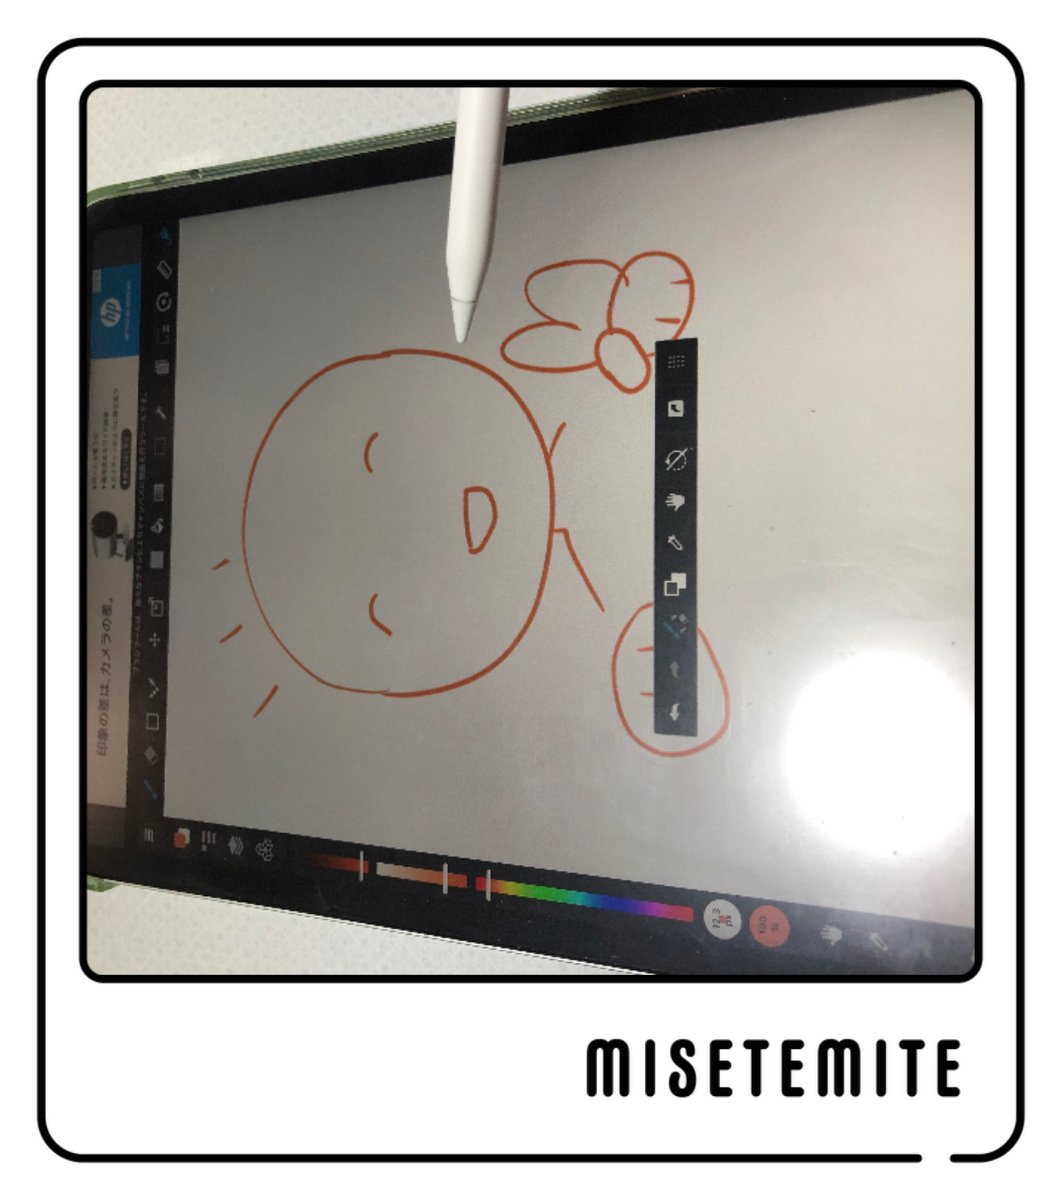 iPad Pro11インチ第2世代とアップルペンシルです🍎ソフトはメディバンペイントが多いです。写真横になっちゃった

#misetemite #見せて見て
https://t.co/C80WPknFLq 